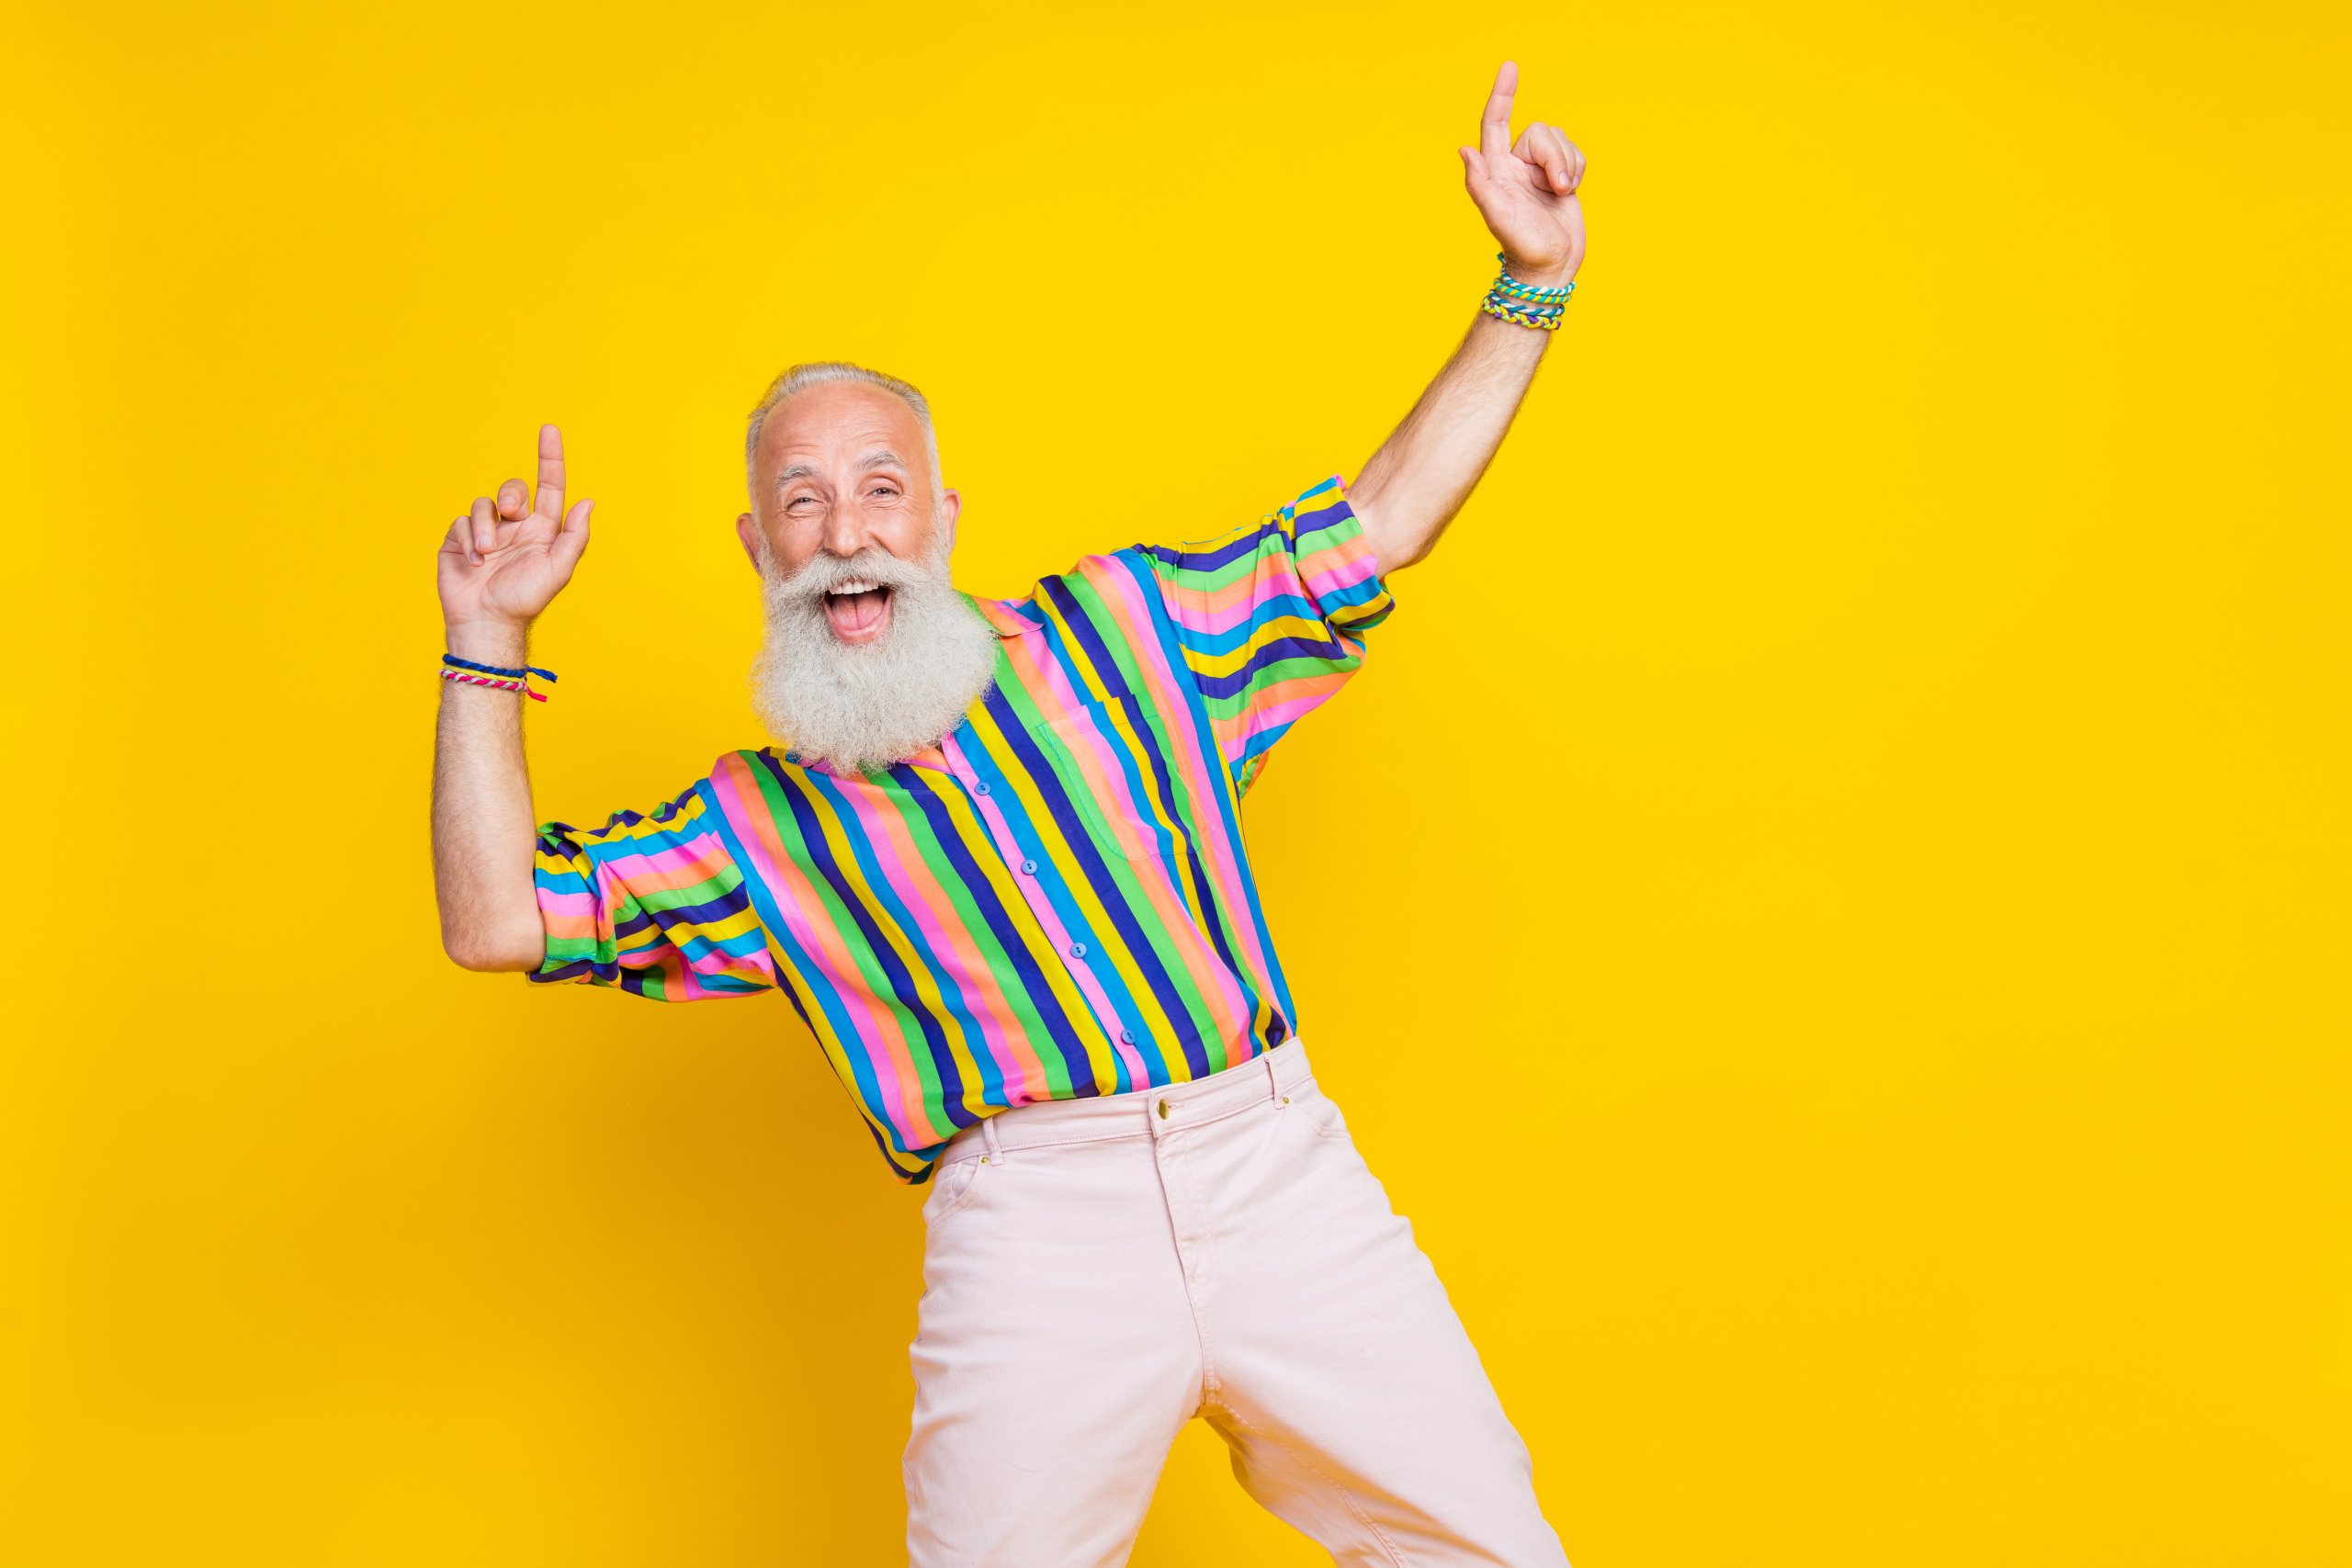 Ein bärtiger älterer Herr trägt ein buntgestreiftes Hemd, hebt die Hände zum Tanzrhythmus und lacht vor einem knallgelben Hintergrund.